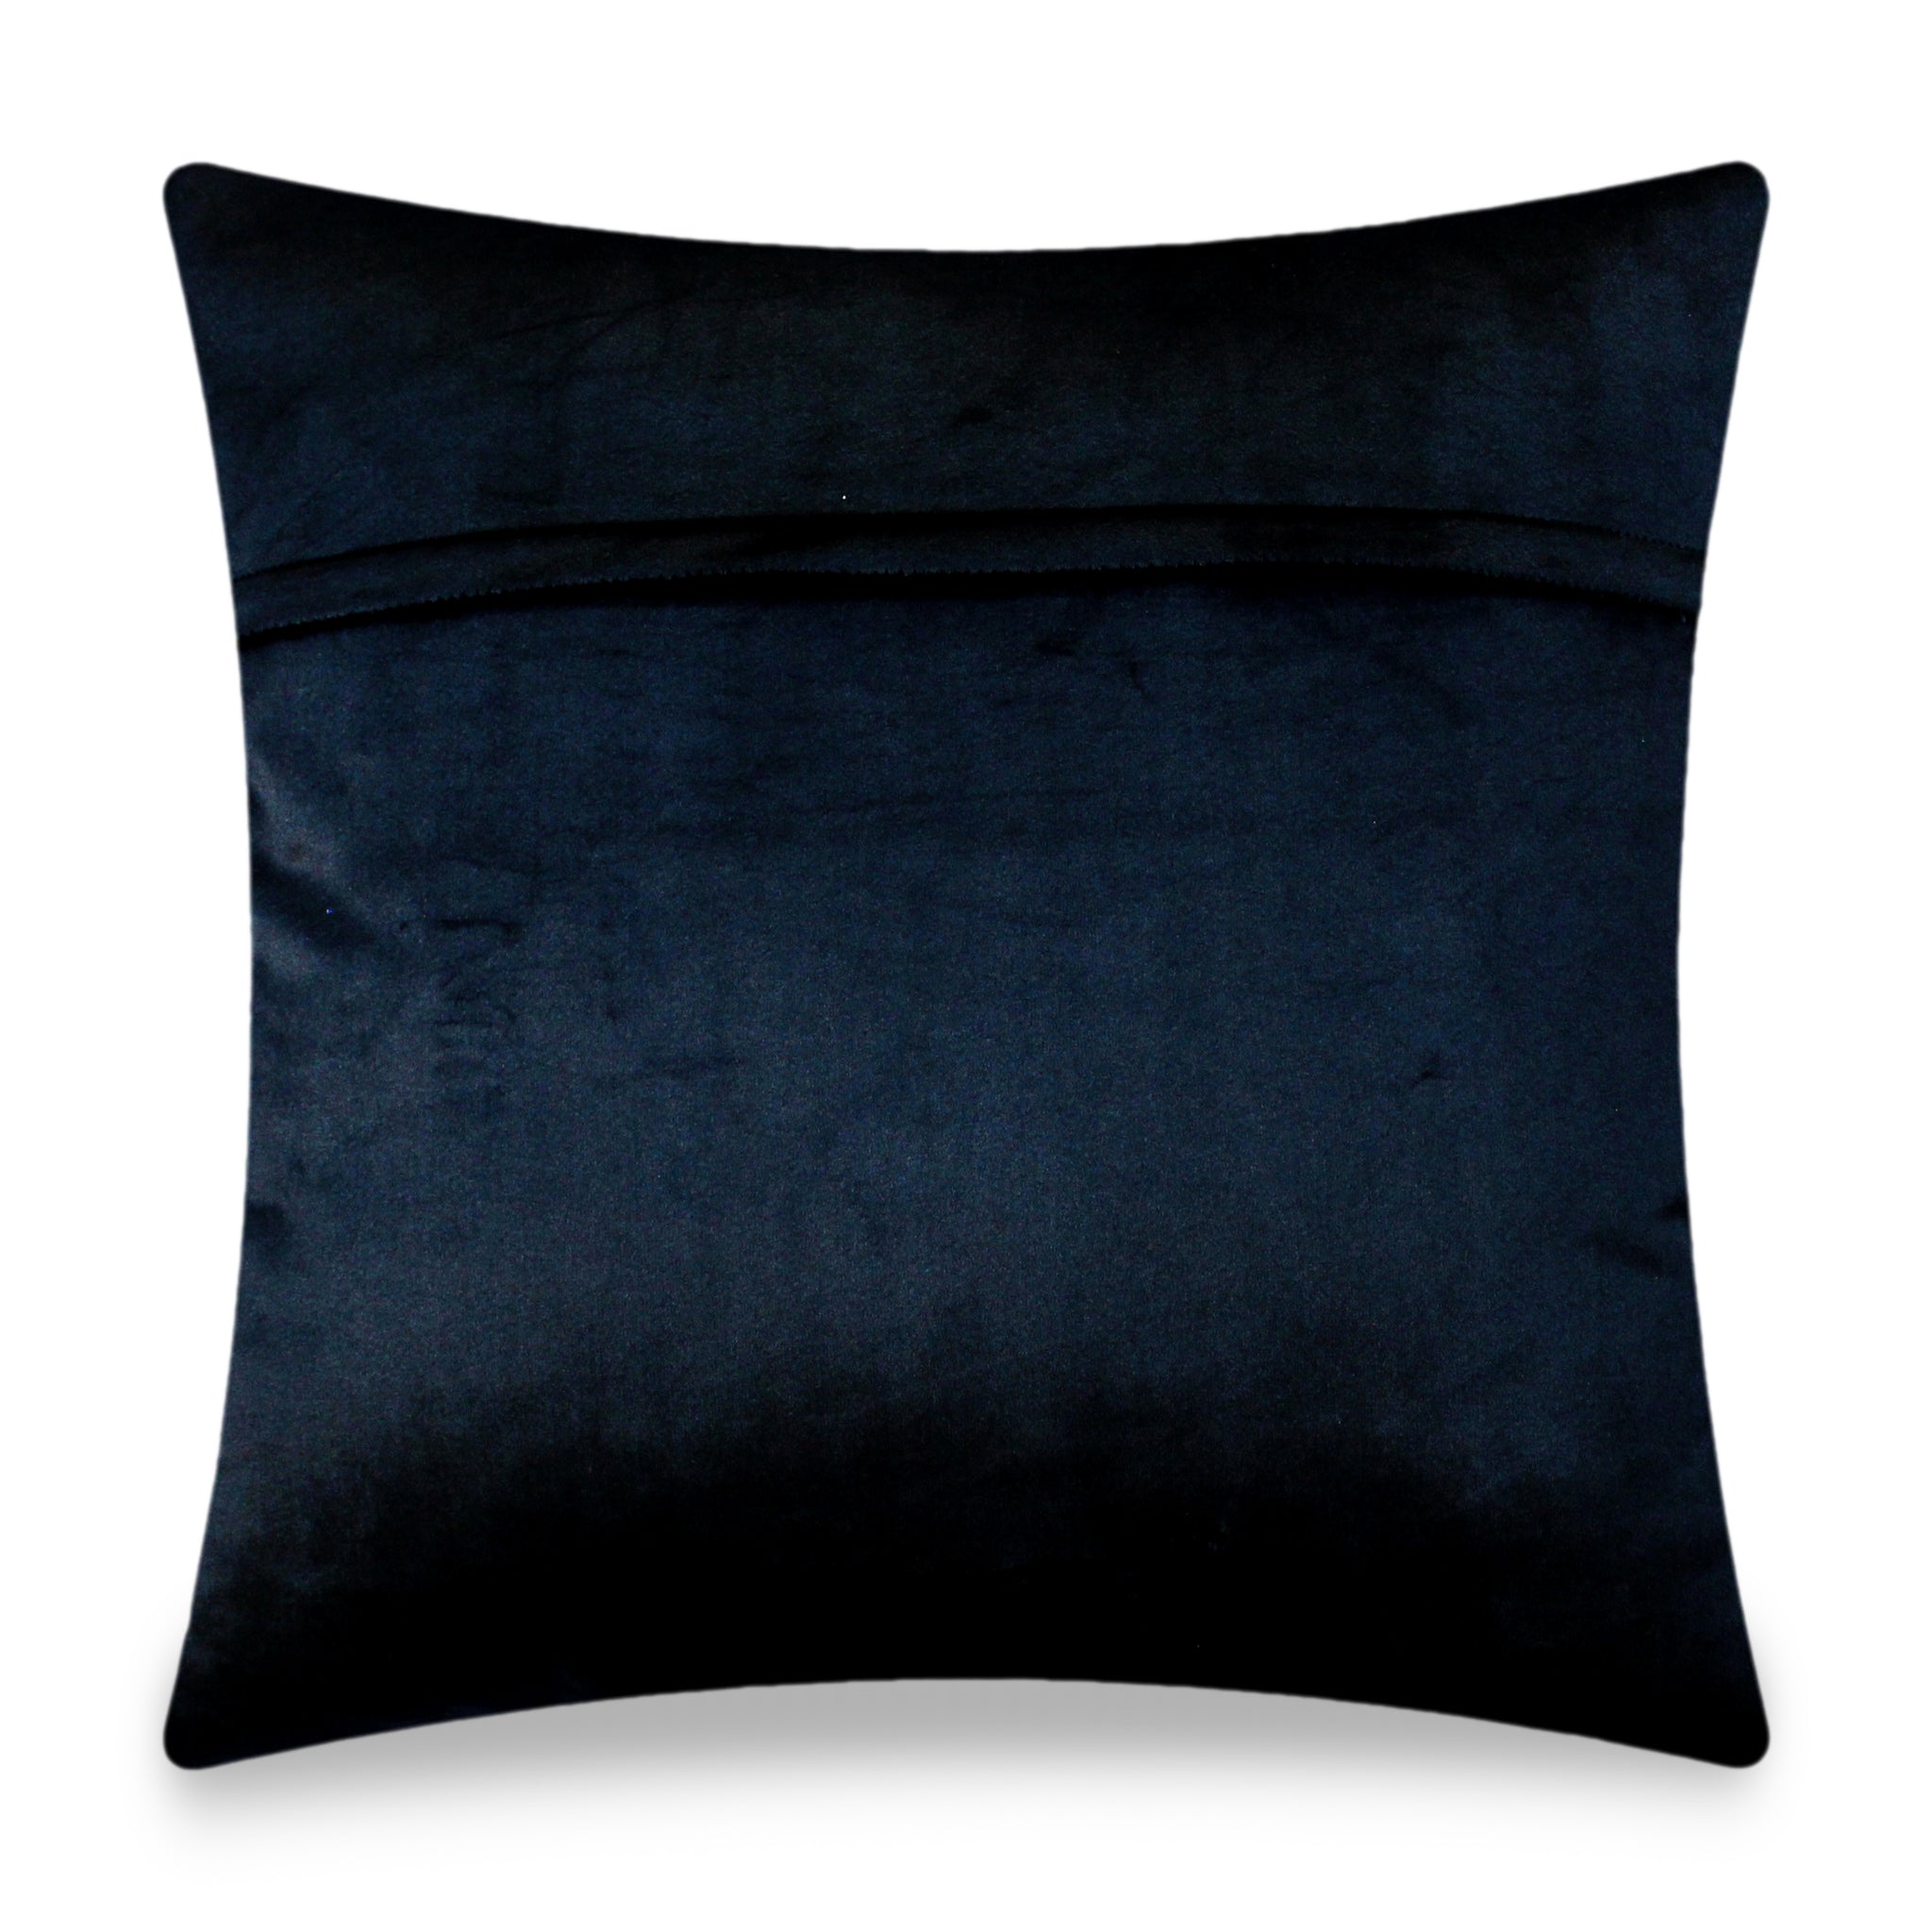 Black Velvet Cushion Cover, Hermes Inspired Horse Printed Decorative P